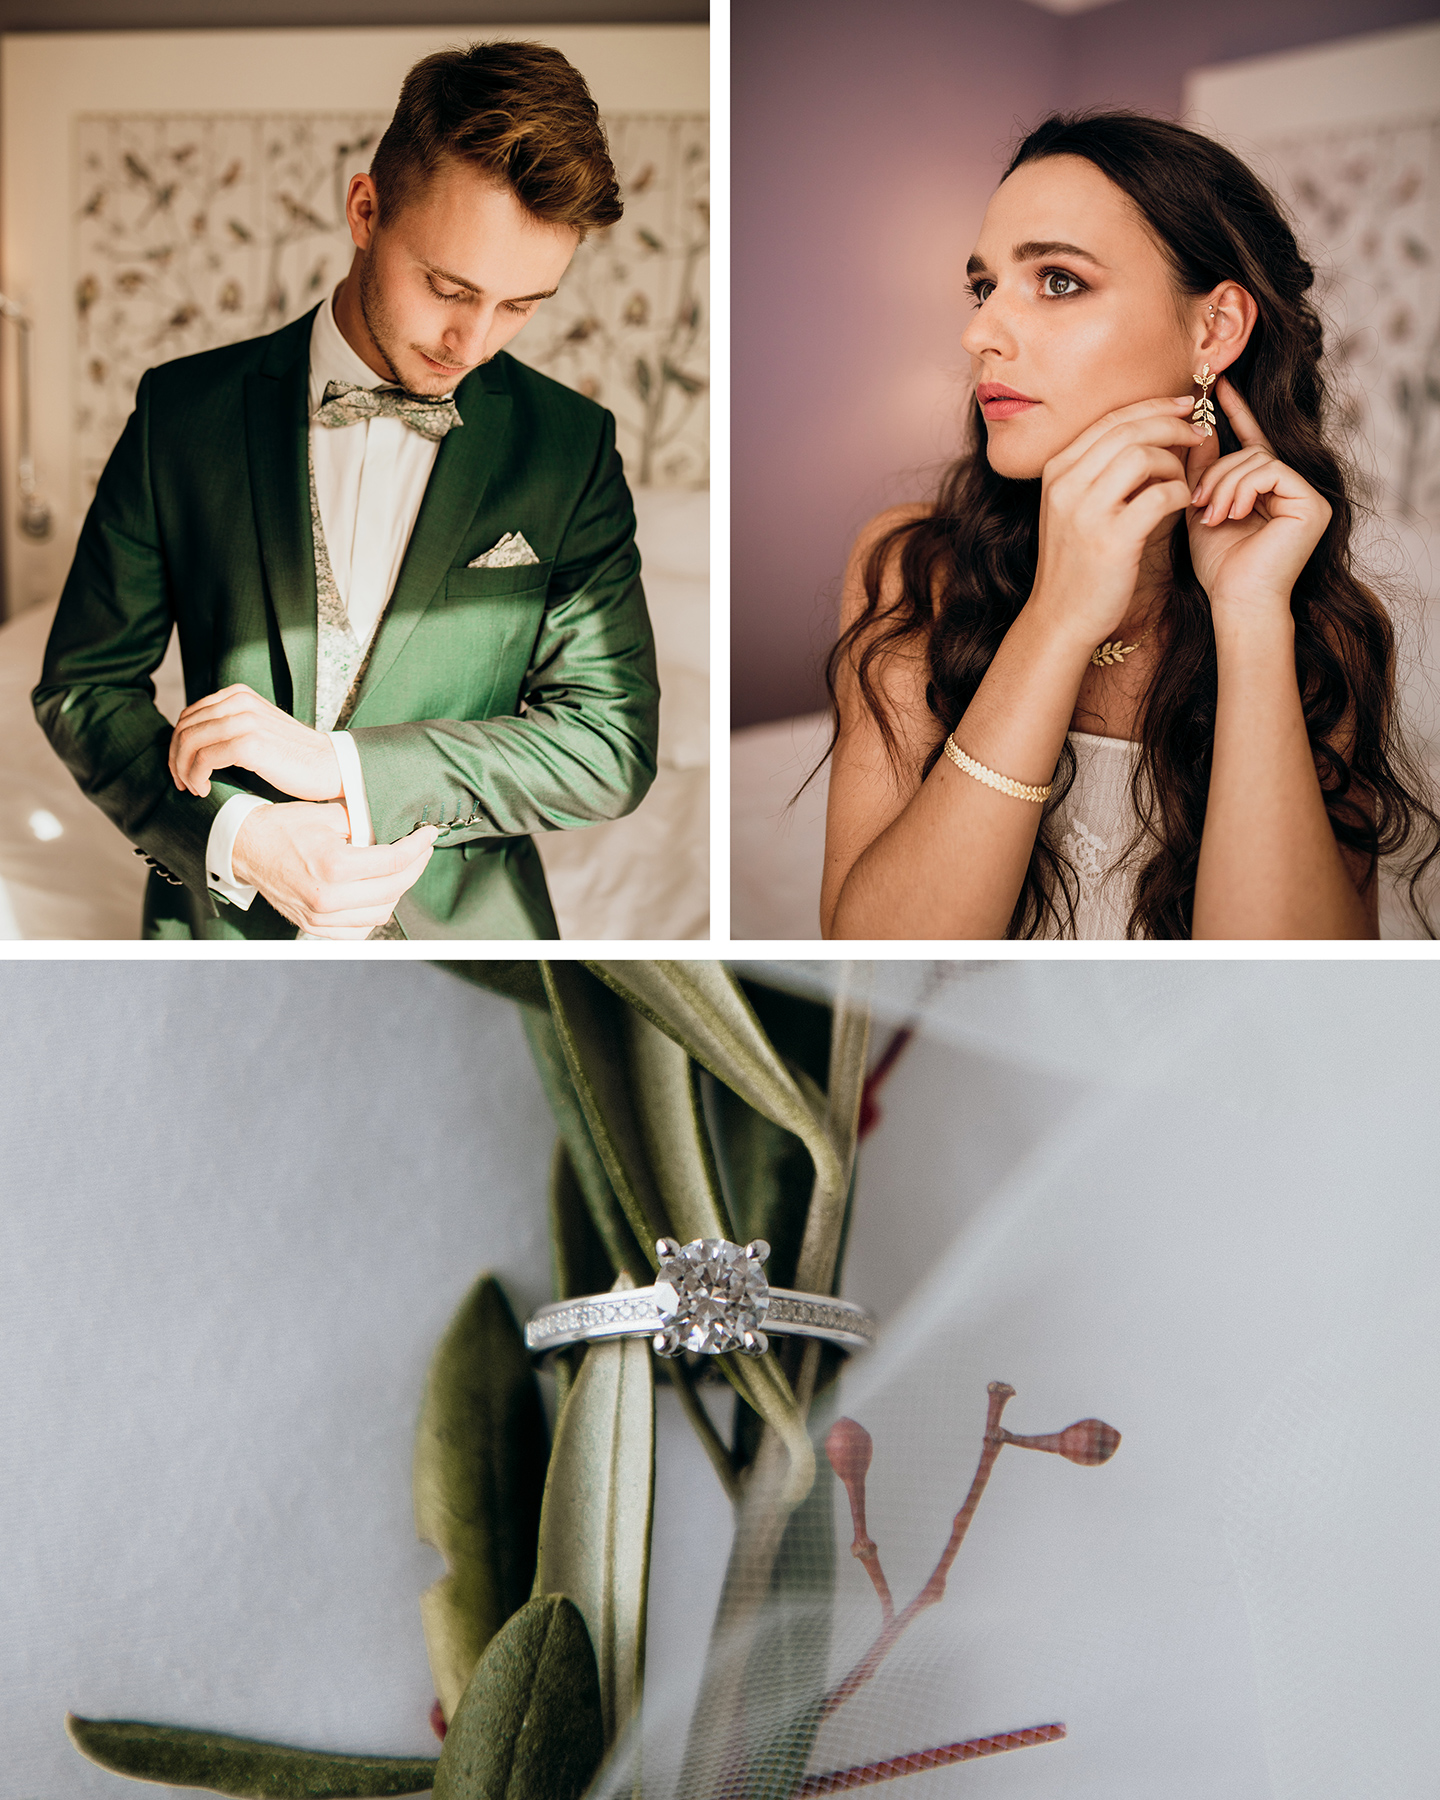 Eine Collage aus drei Bildern. Links ist der Mann im mossgrünen Anzug zu sehen, der sich seine Manschettenknöpfe zumacht. Rechts sieht man die Braut, wie sie sich ihre Ohrringe ansteckt. Das untere Bild der Collage zeigt eine Detailaufnahme des Rings. 